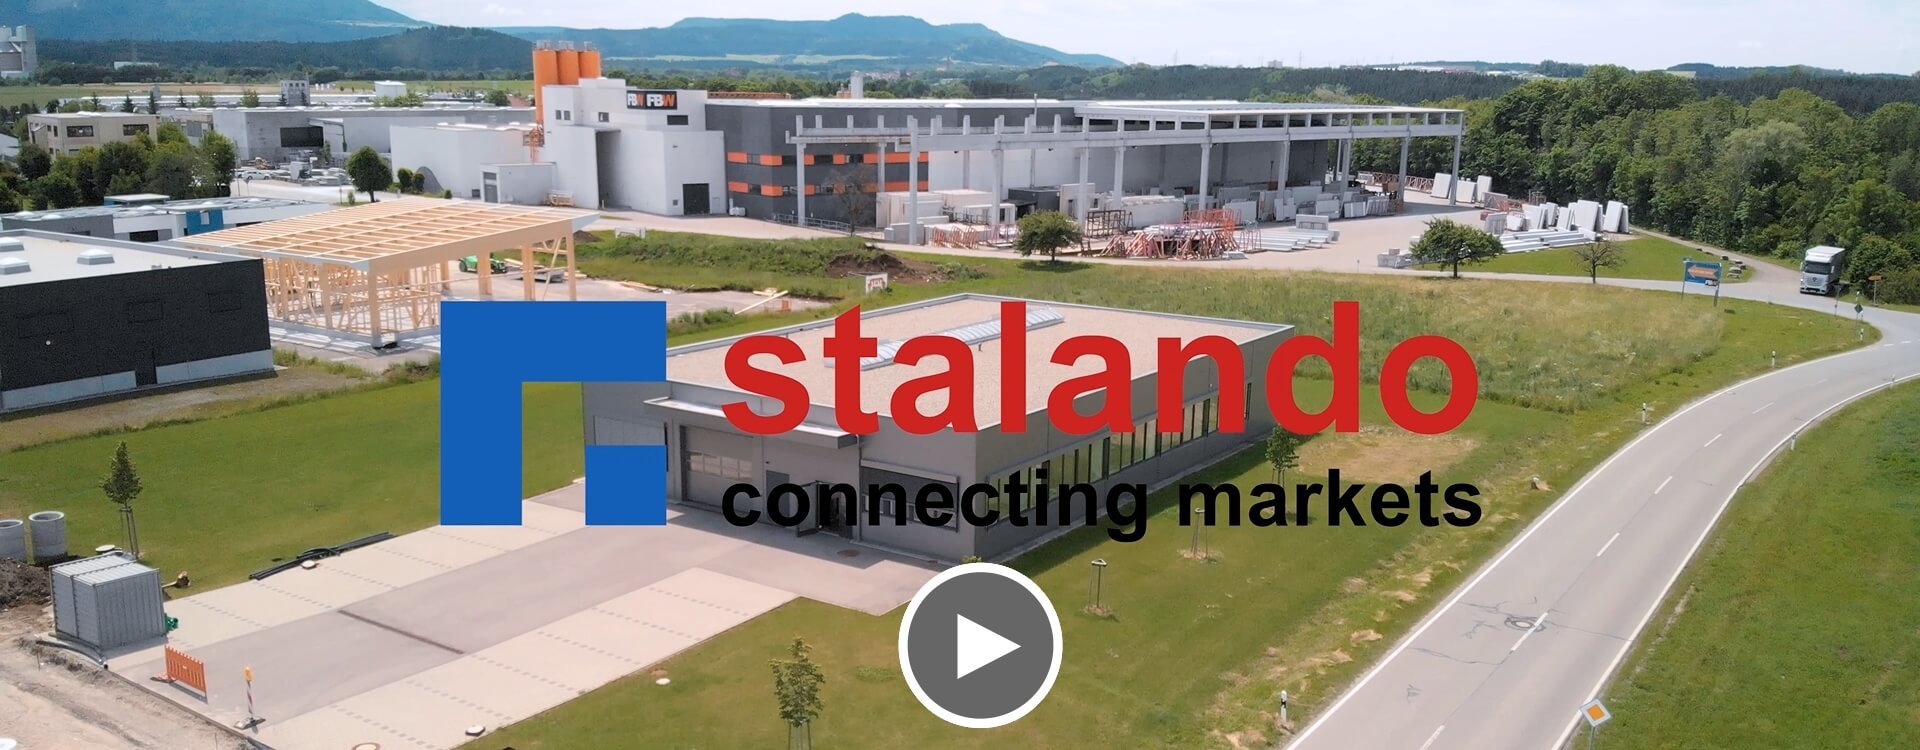 Video neuer Firmensitz von stalando